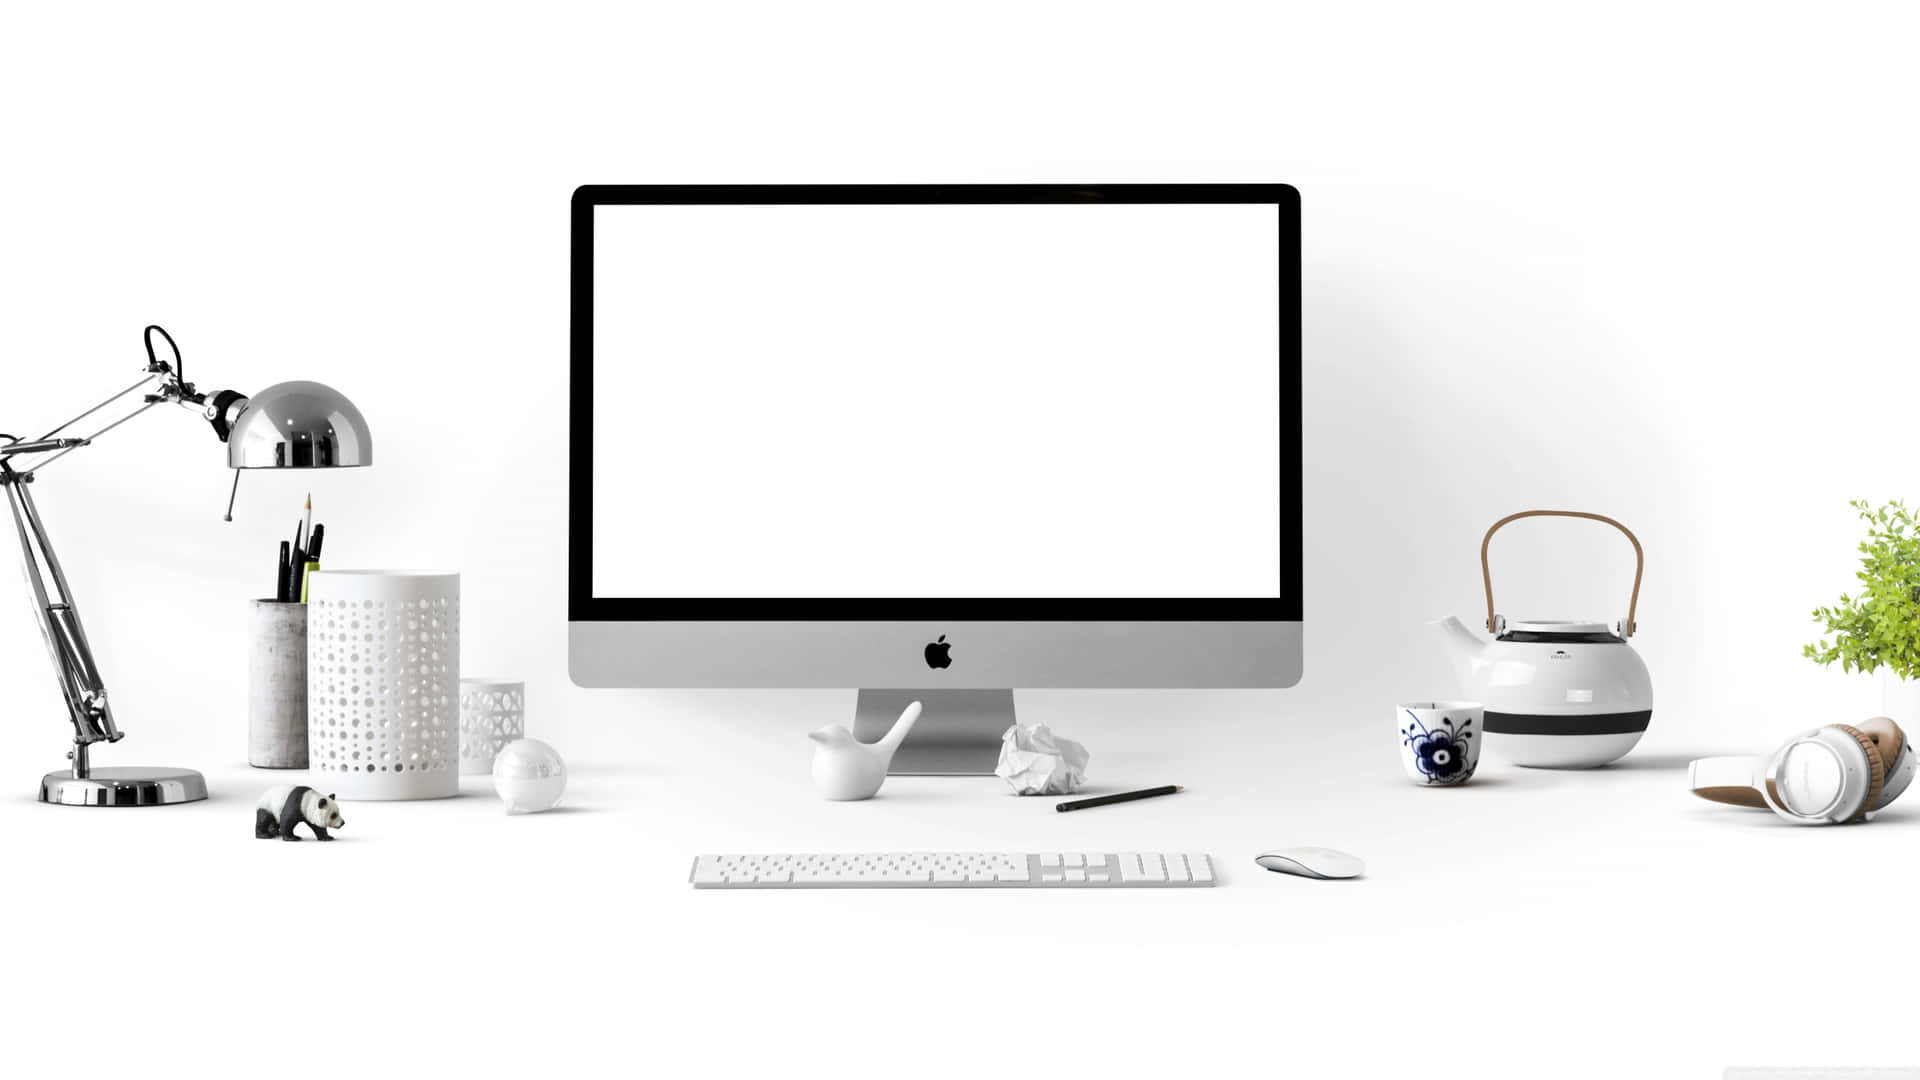 Einweißer Computer Mit Einem Weißen Bildschirm Und Anderen Gegenständen.